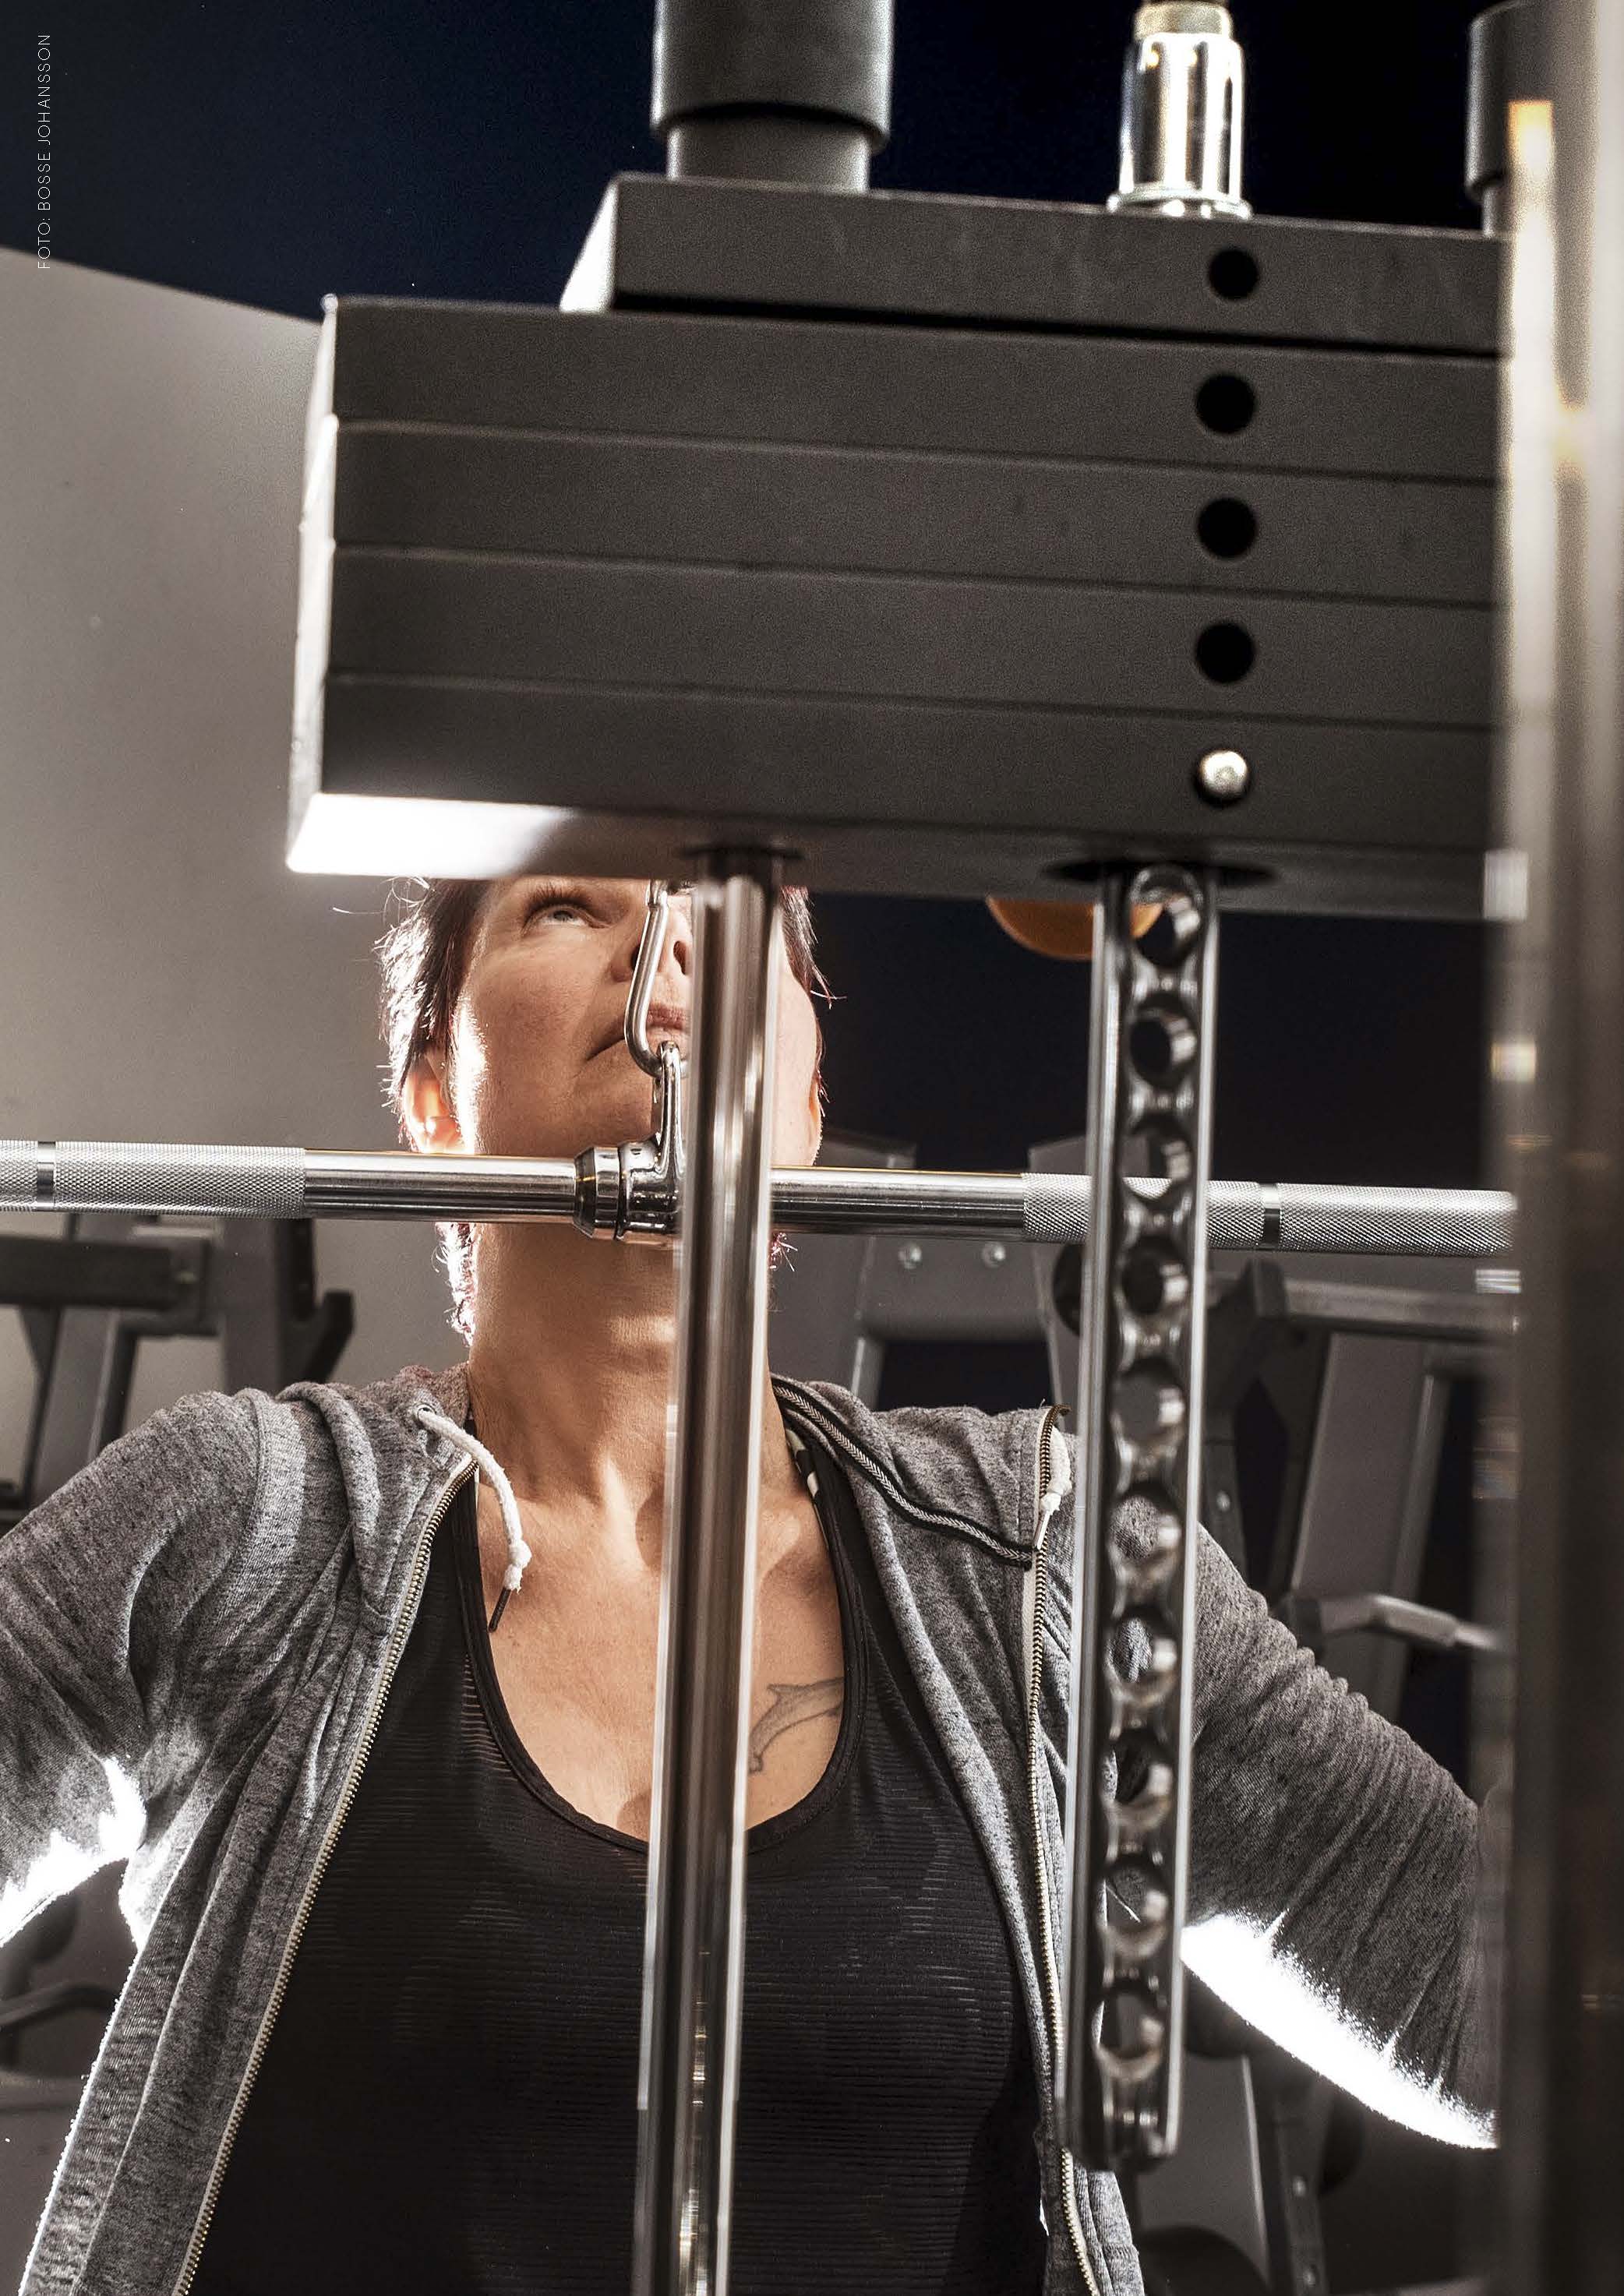 Närbild på Ulrika som befinner sig på ett gym där hon använder en träningsmaskin